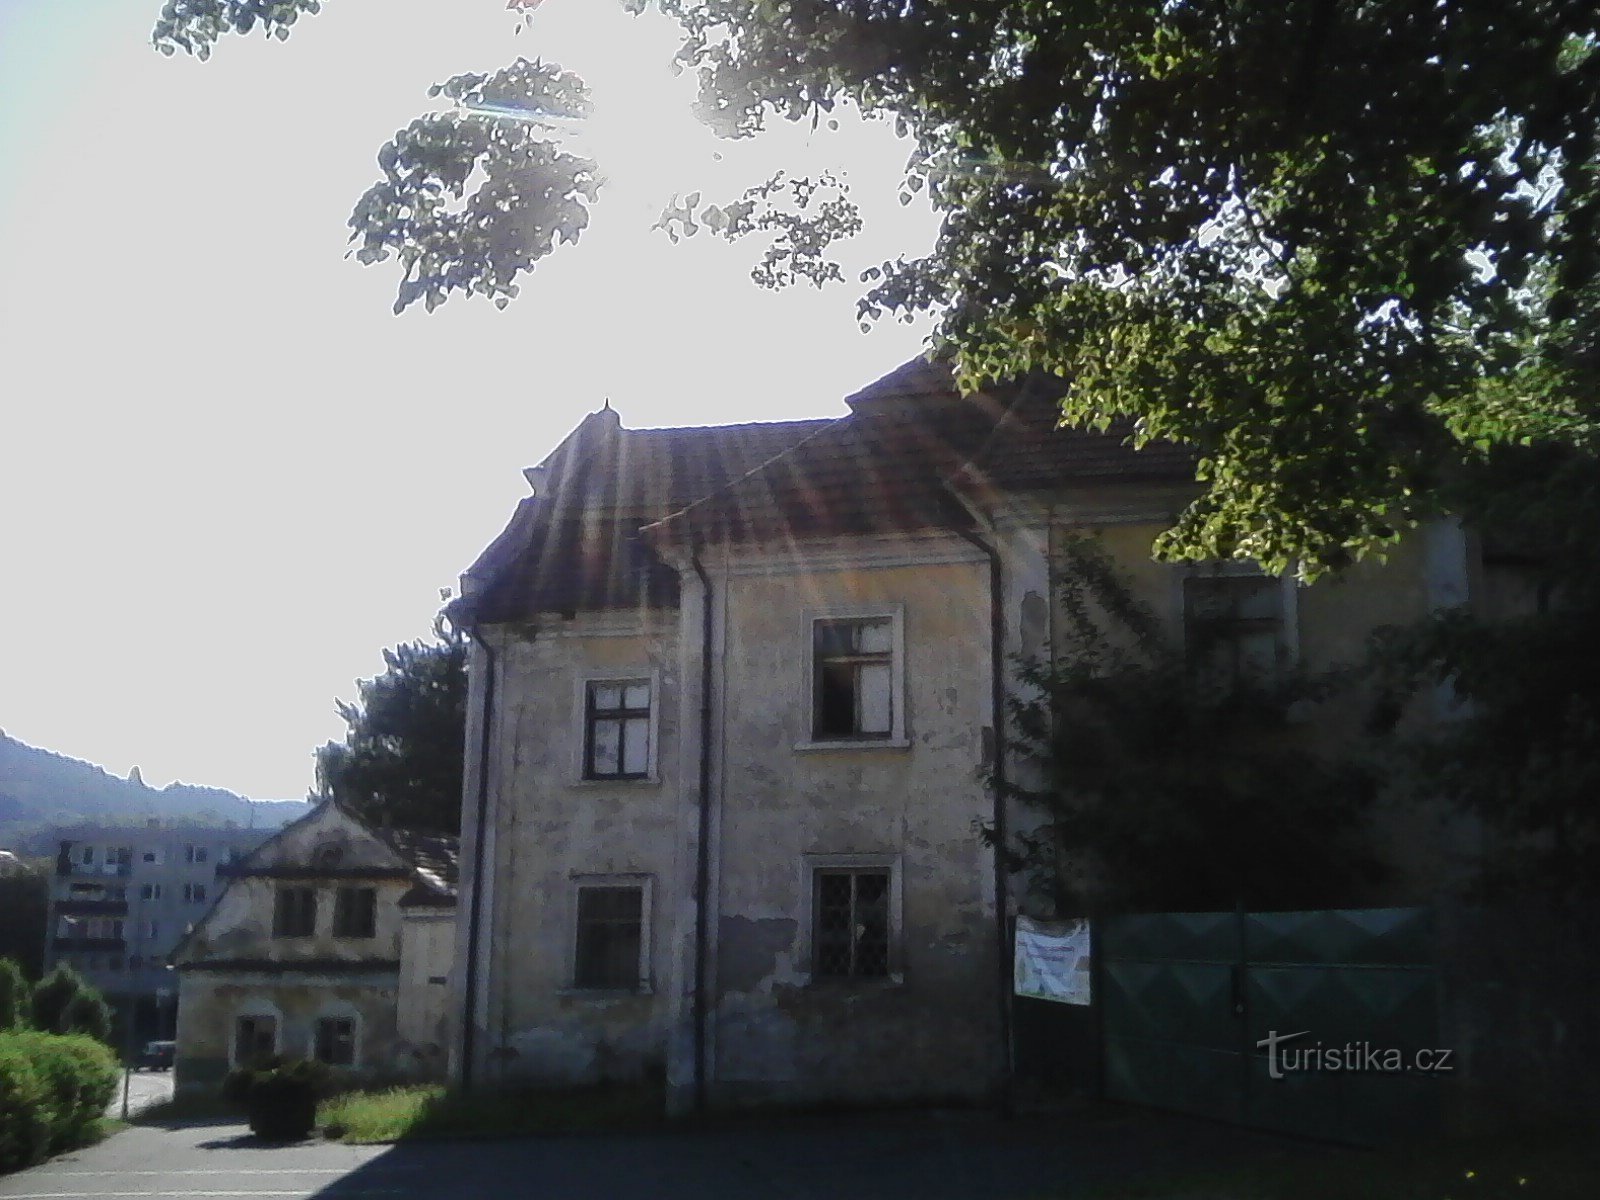 1.新城堡投票。 最初是 1614 年 Votice burgomaster Vít Paskéky 的房子。